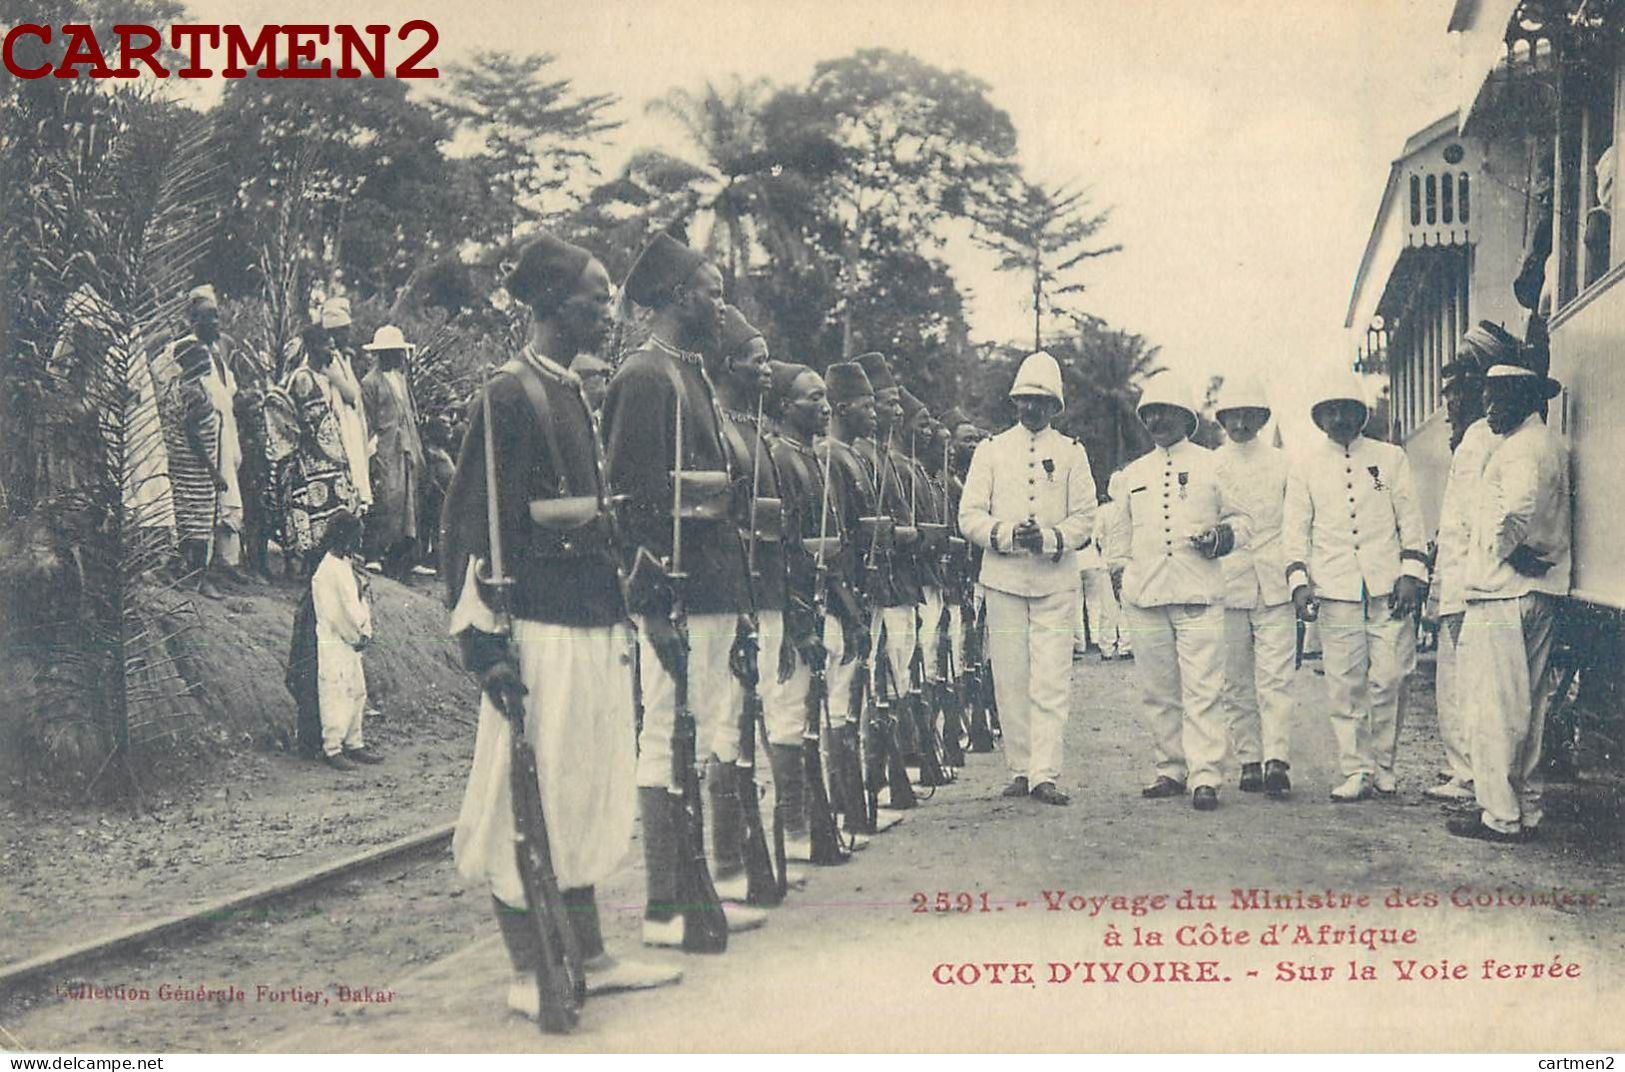 COTE-D'IVOIRE VOYAGE DU MINISTRE DES COLONIES A LA COTE D'AFRIQUE SUR LA VOIE FERREE GARE STATION ABIDJEAN POLITIQUE - Elfenbeinküste